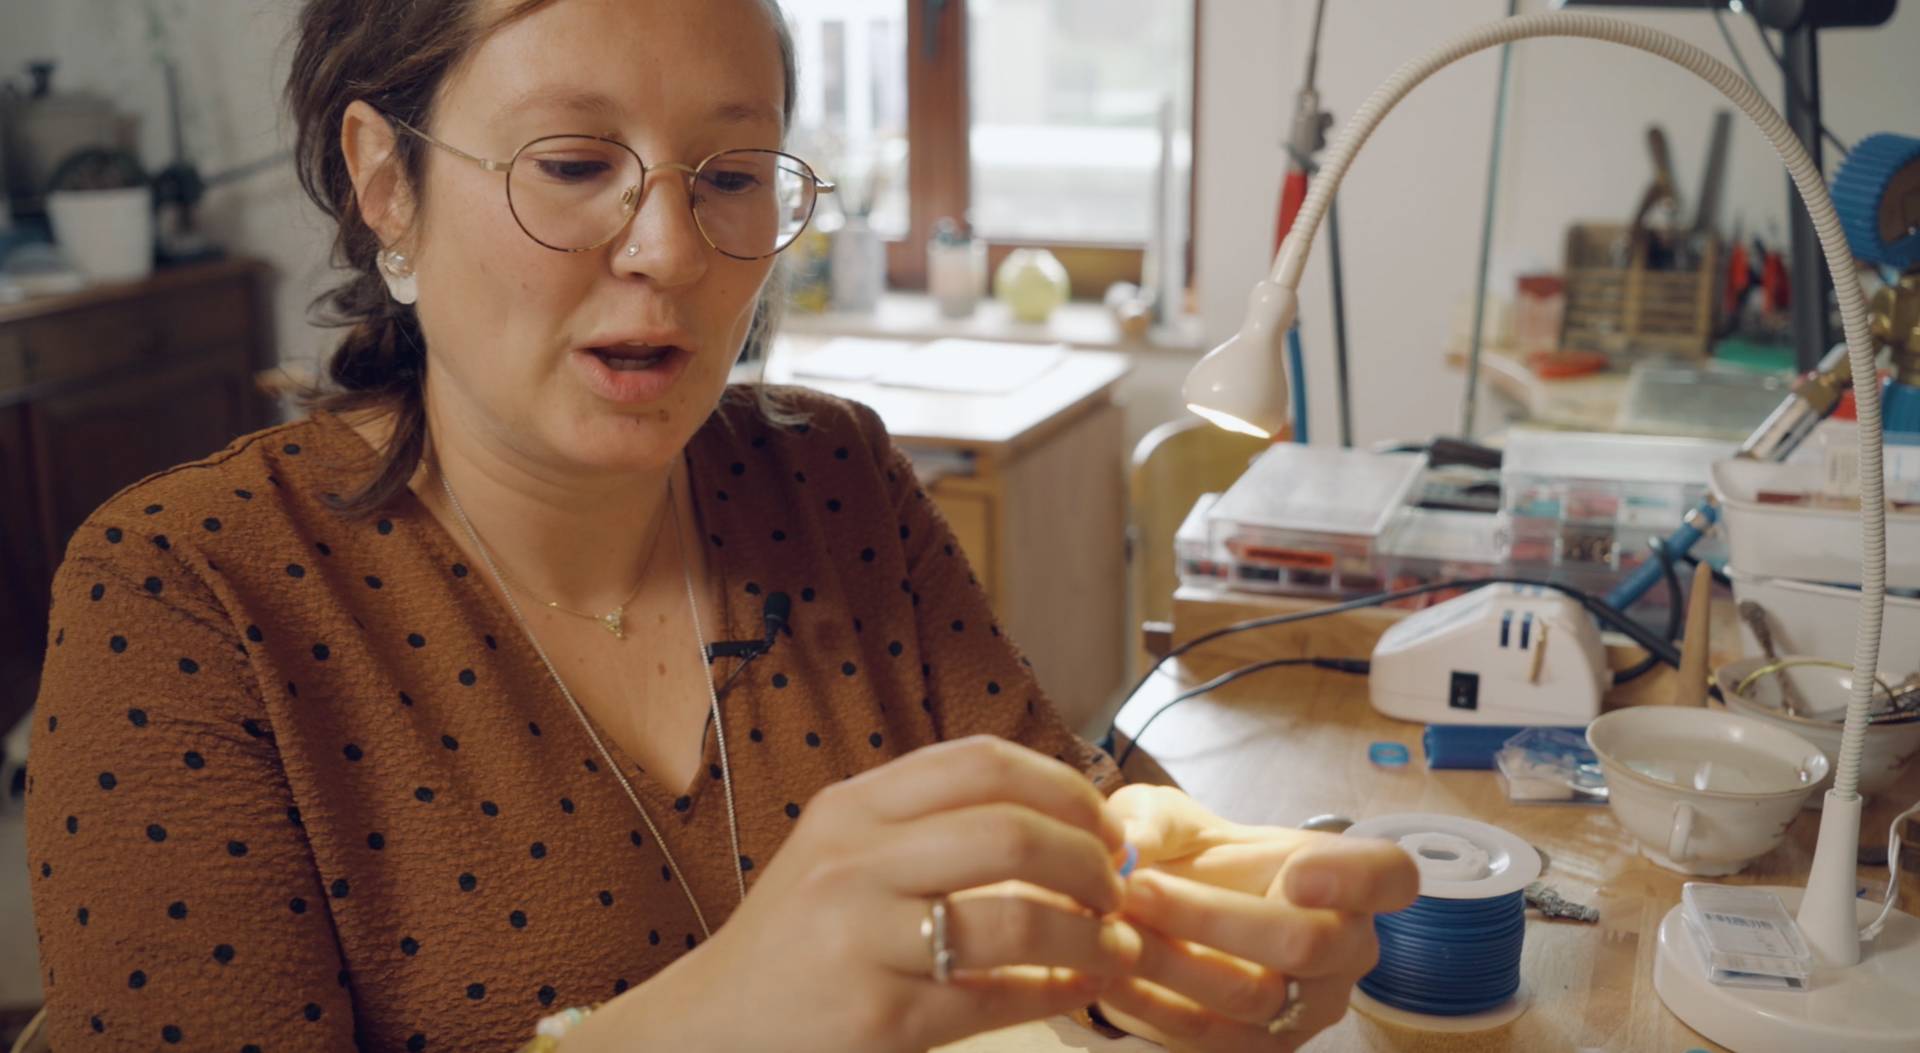 Video laden: Wil je graag eens kijken hoe goudsmid en juweelontwerpster Lies Wambacq uit Leuven haar sieraden maakt. Ze toont de techniek waarmee ze patronen op juwelen kan zetten. Ze maakt trouwringen, verlovingsringen, oorbellen, geboortesieraden,...